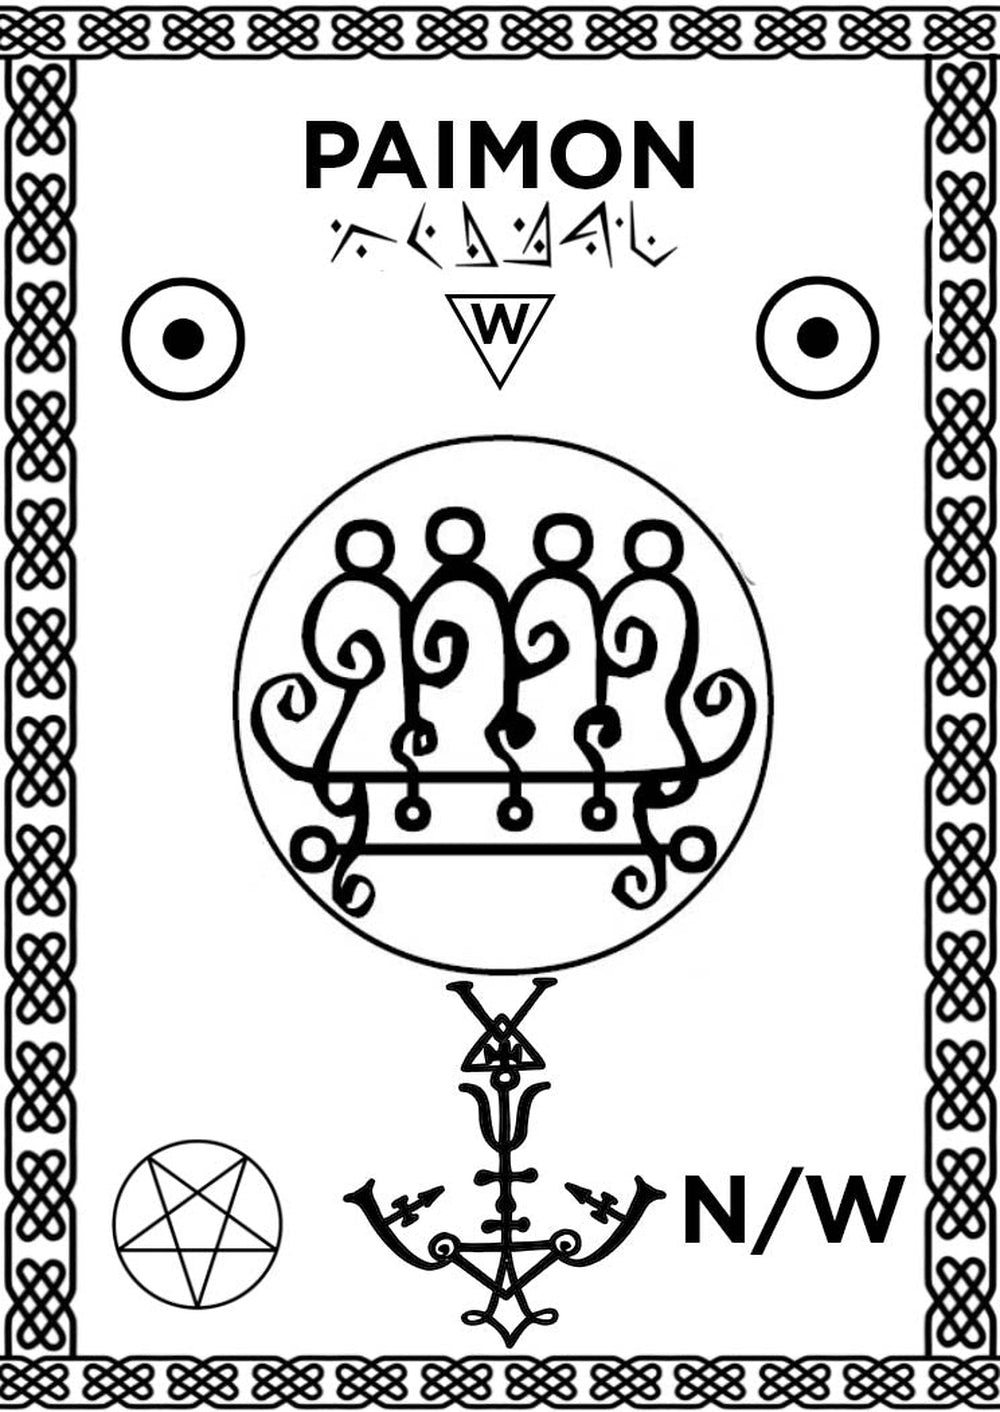 Invocatio Alignment-Pad-cum-Sigil-of Paimon pro domo Altaris Witchcraft-2